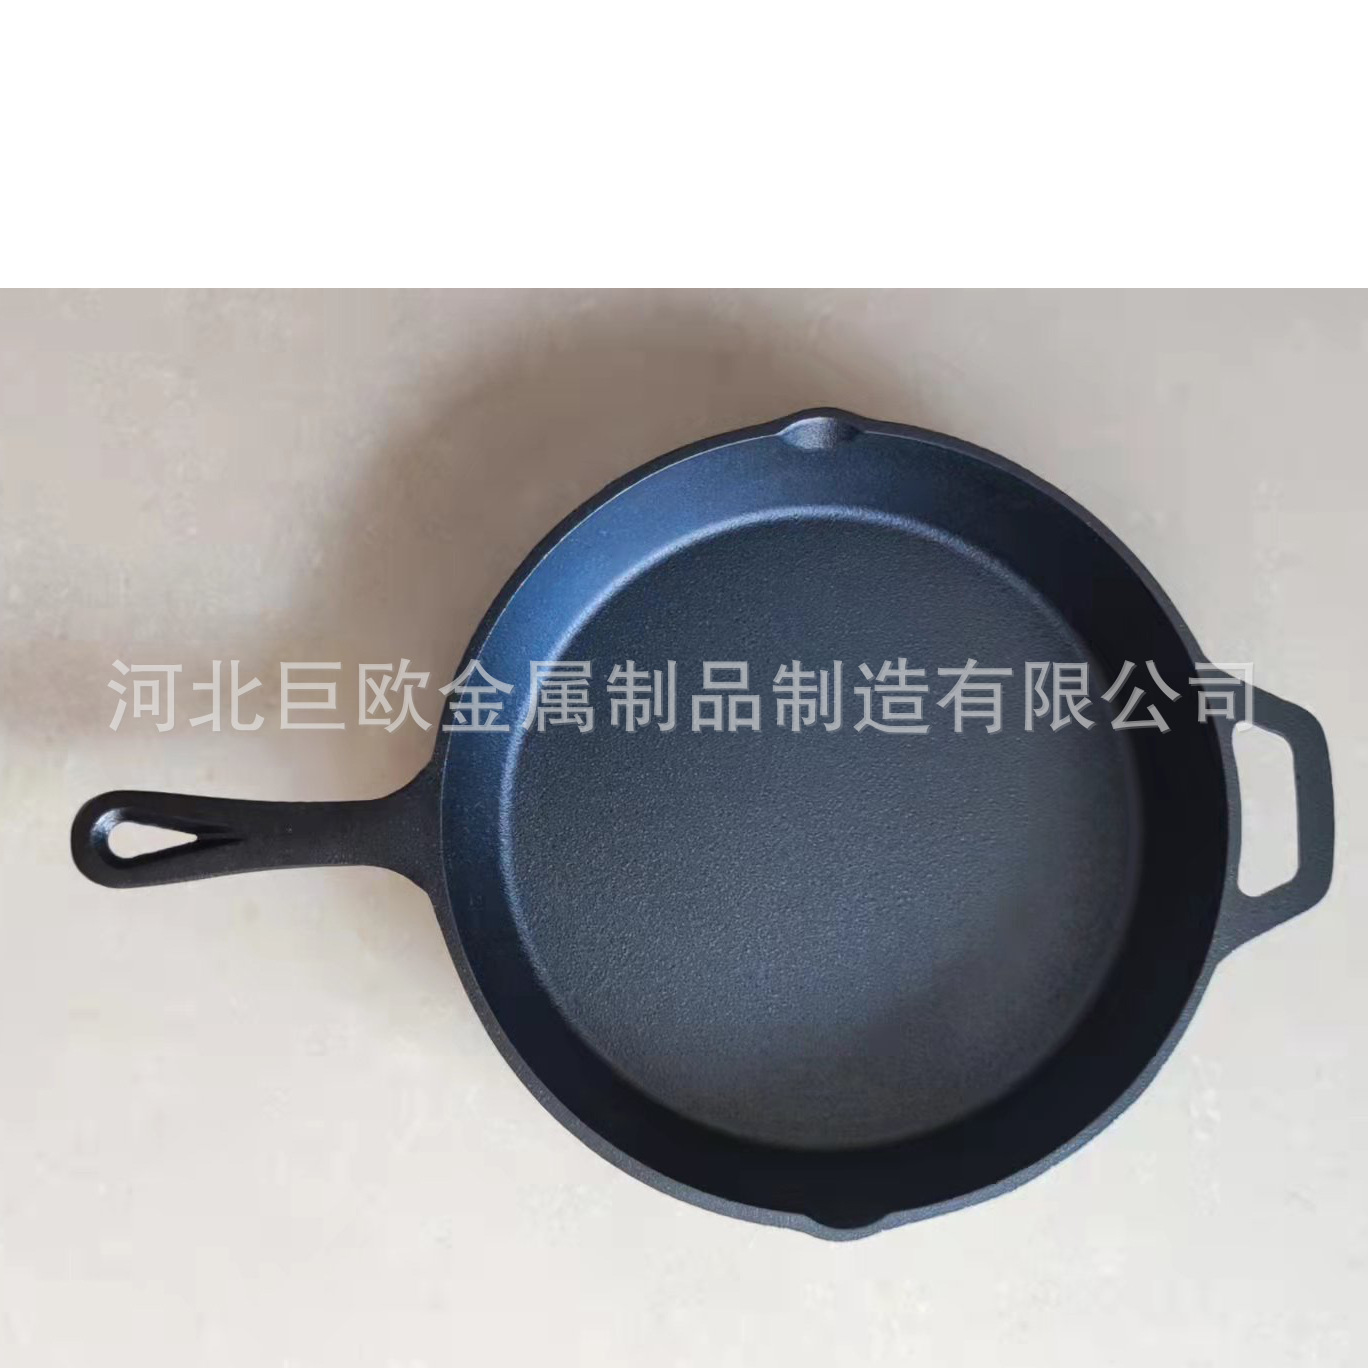 铸铁煎锅26cm煎锅平底锅煎盘烧烤盘skillet cast iron frying pan